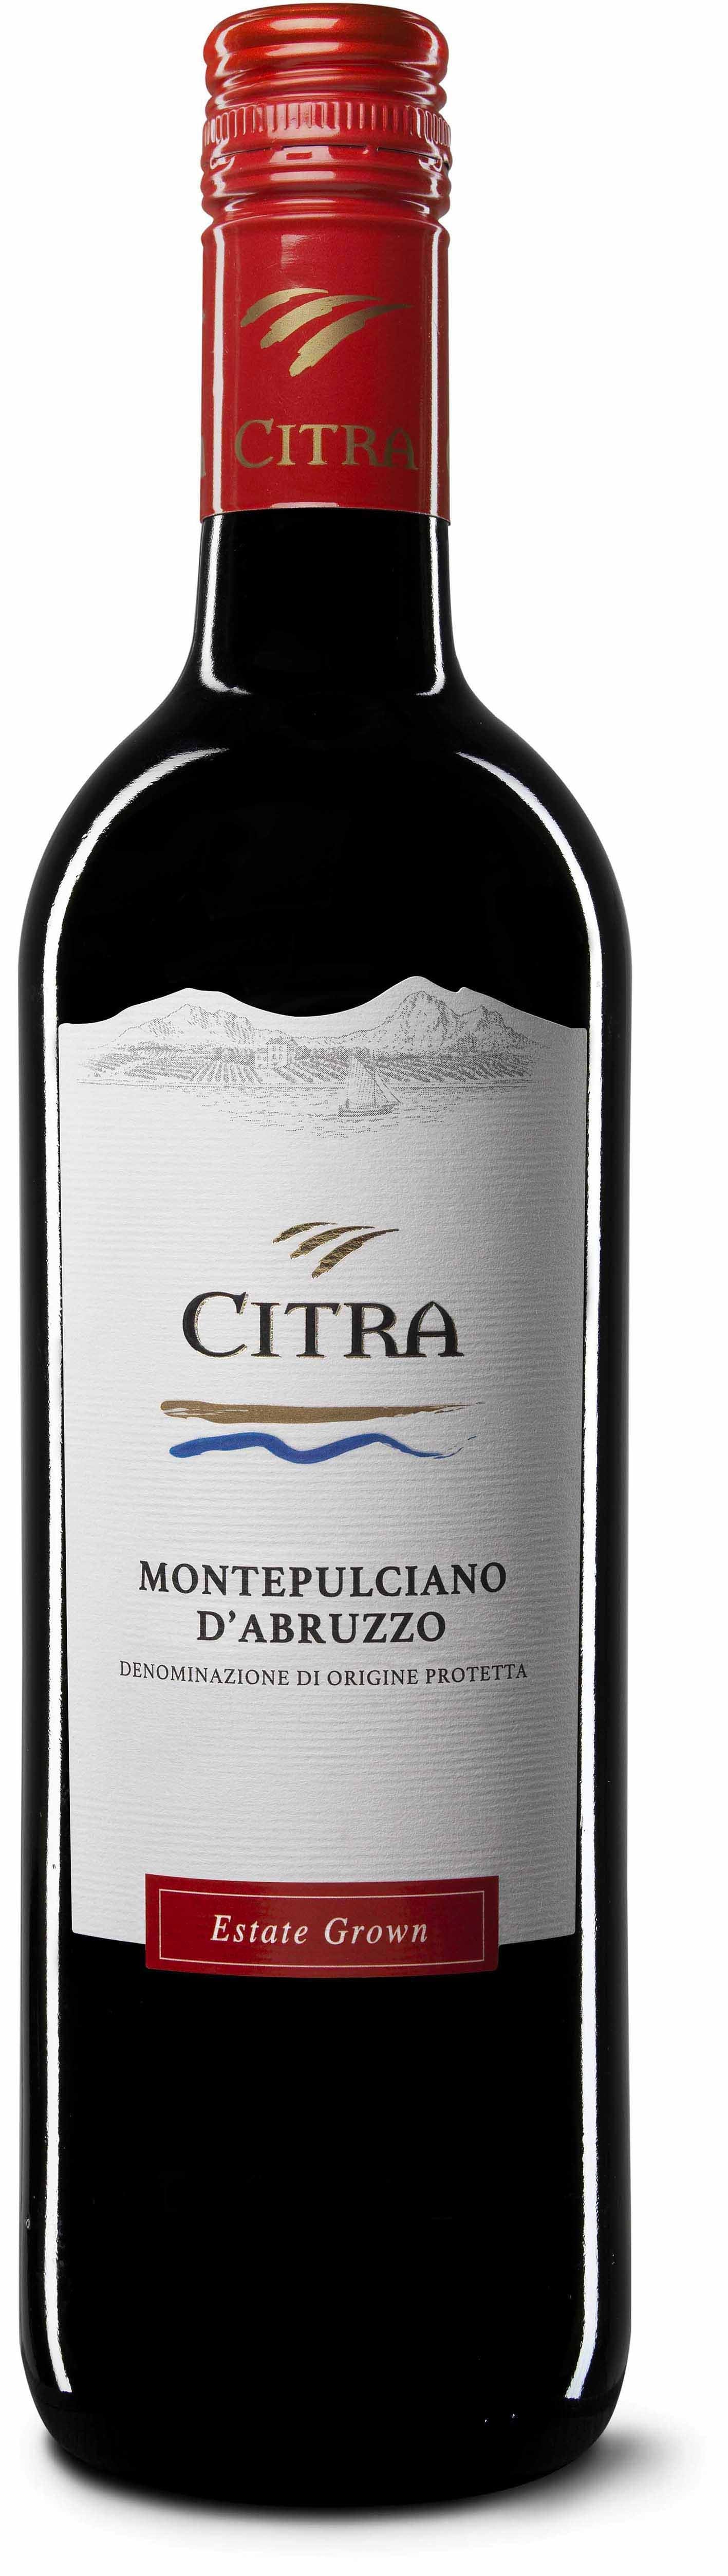 Citra Montepulciano d'Abruzzo 2018